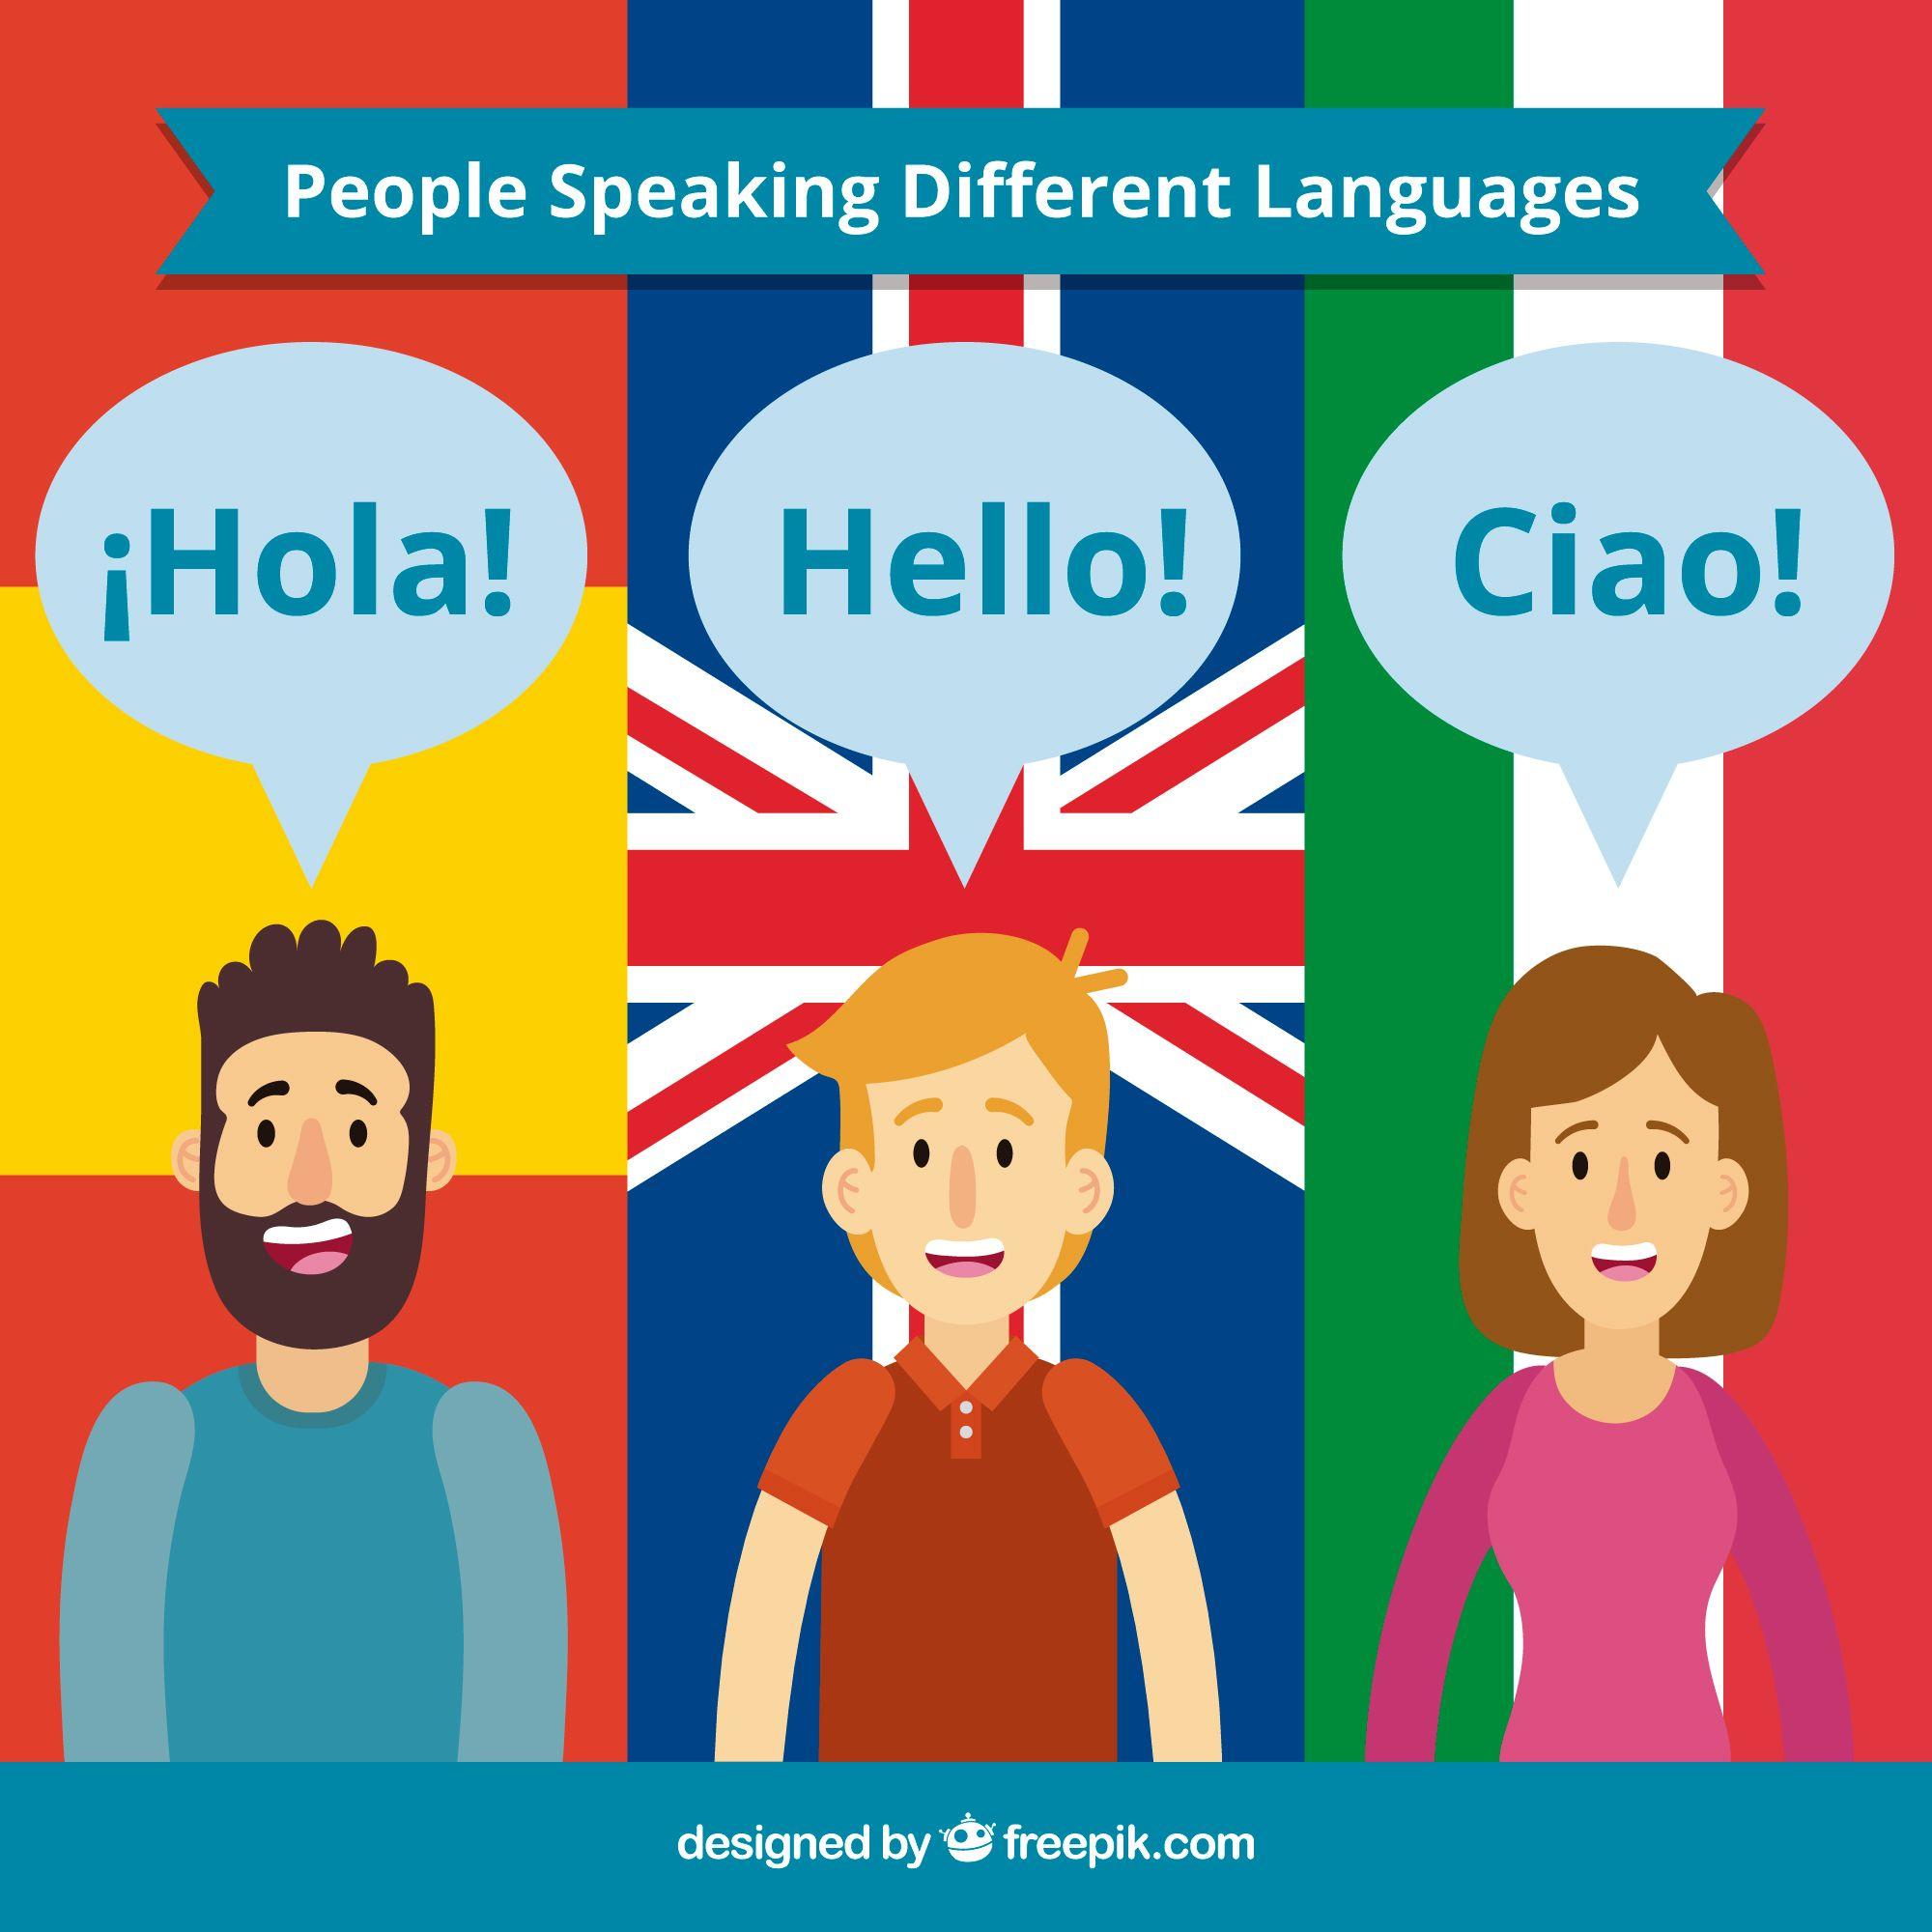 Nyelvtanulás nyáron: itthon vagy külföldön?